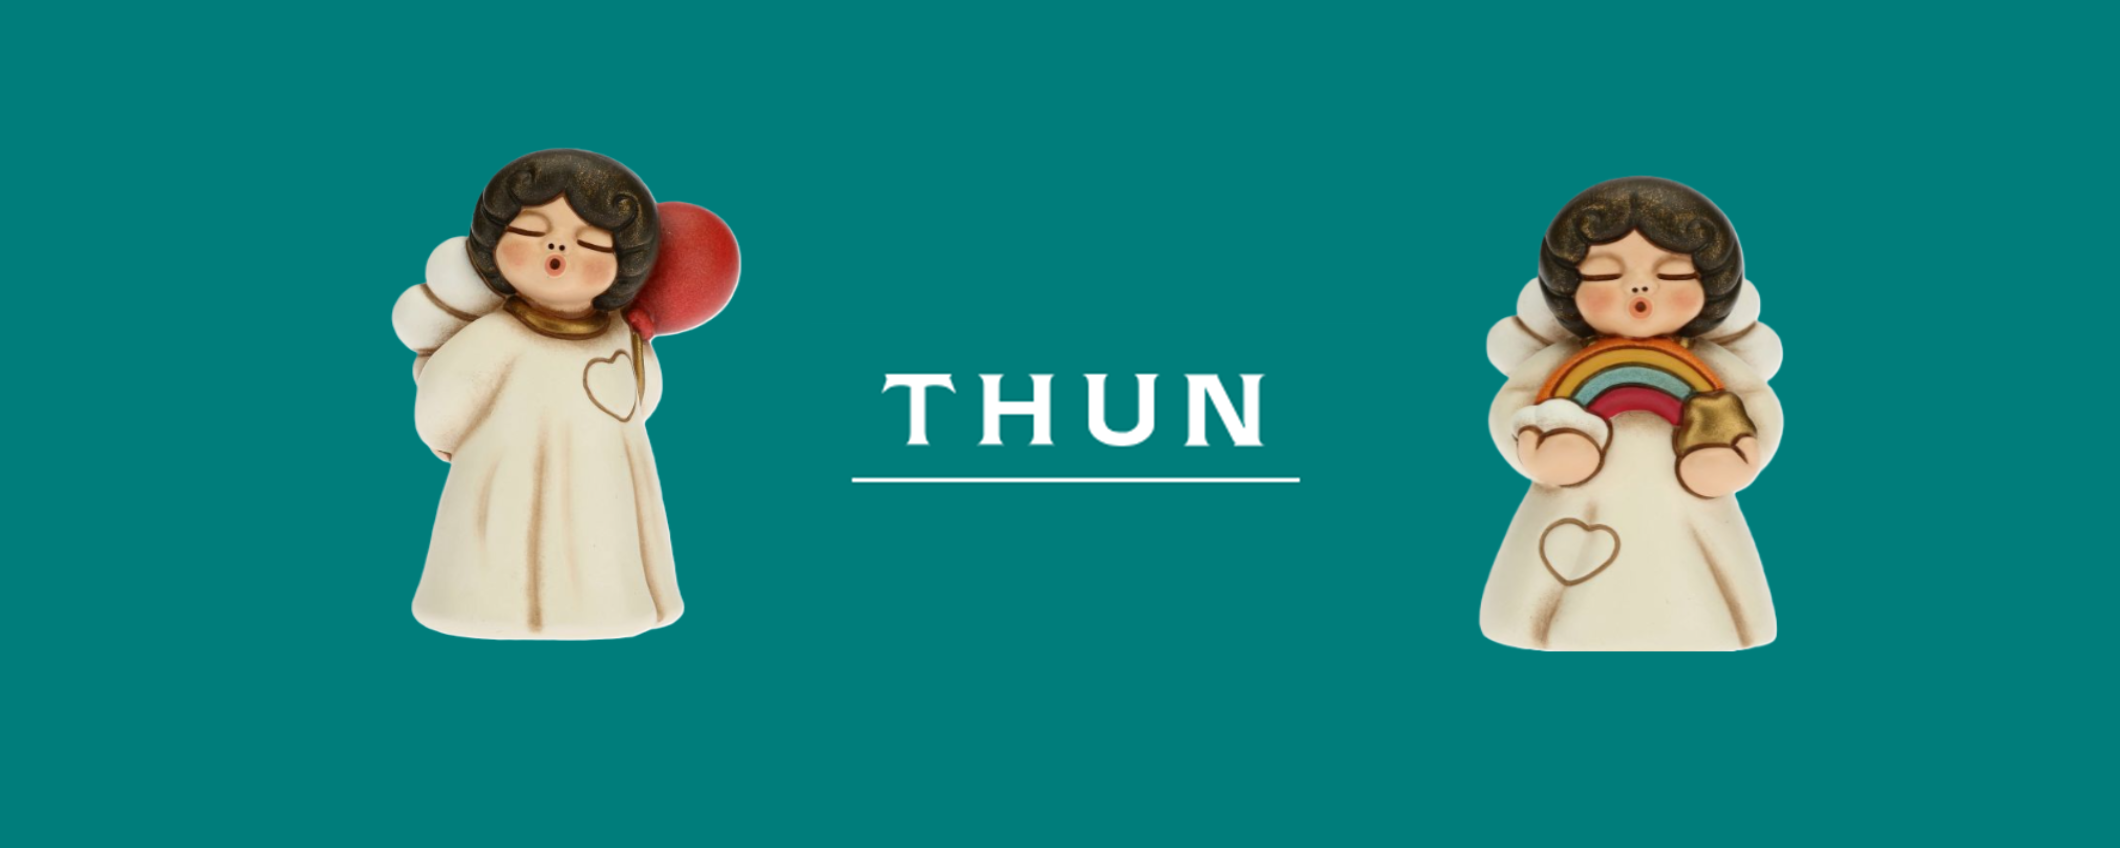 Il mondo Thun e la sua storia